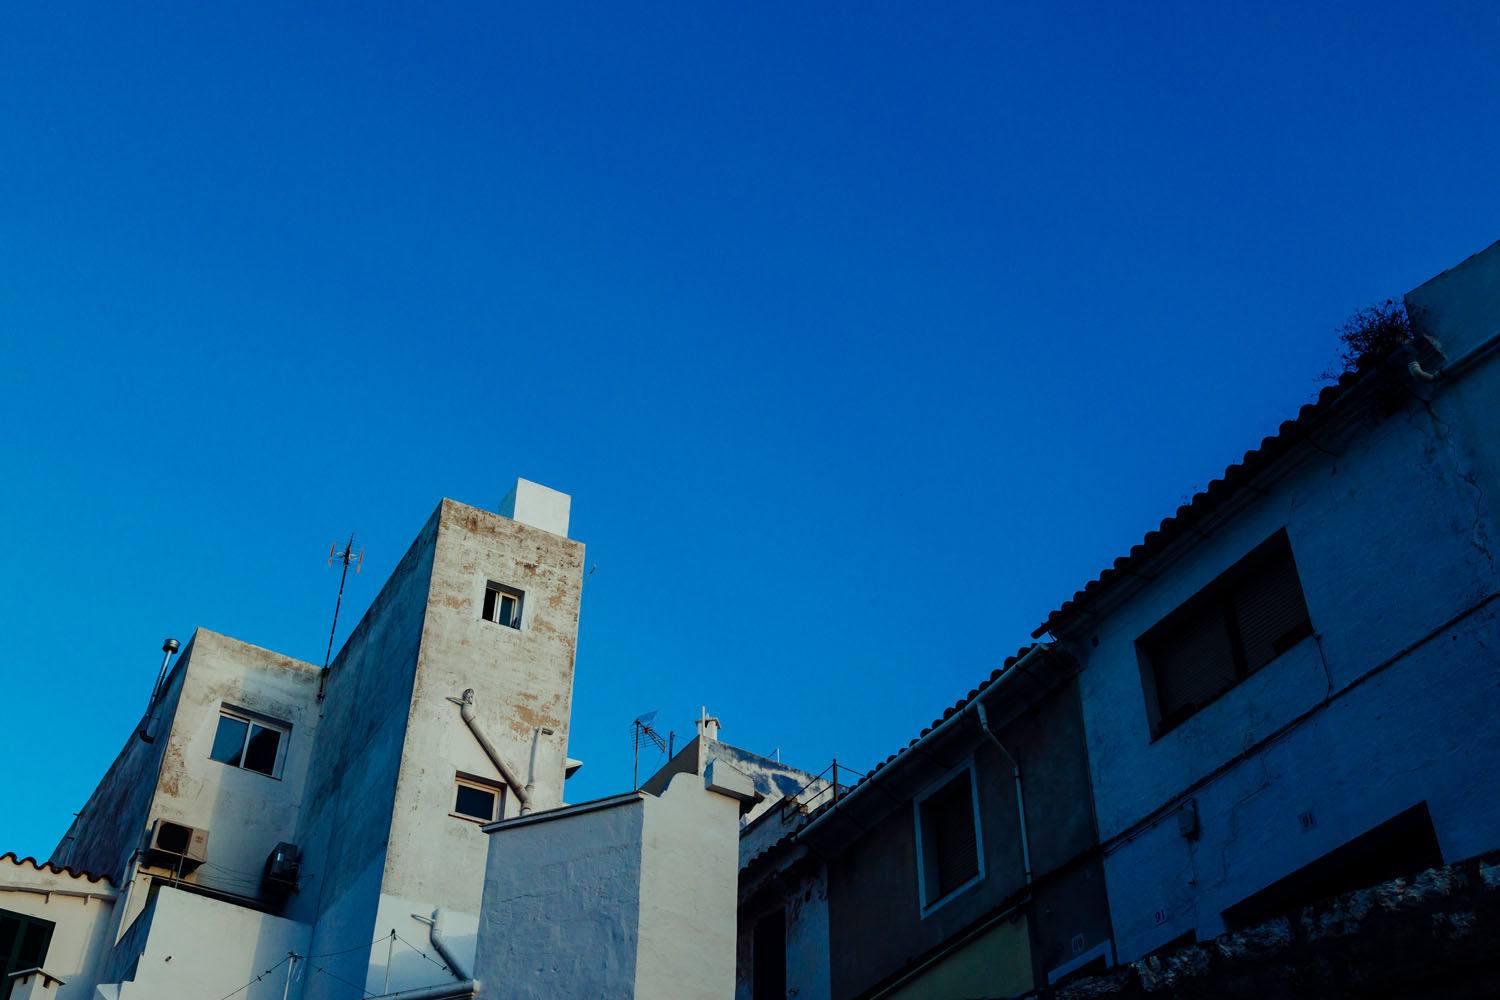 Old buildings in Menorca, Spain